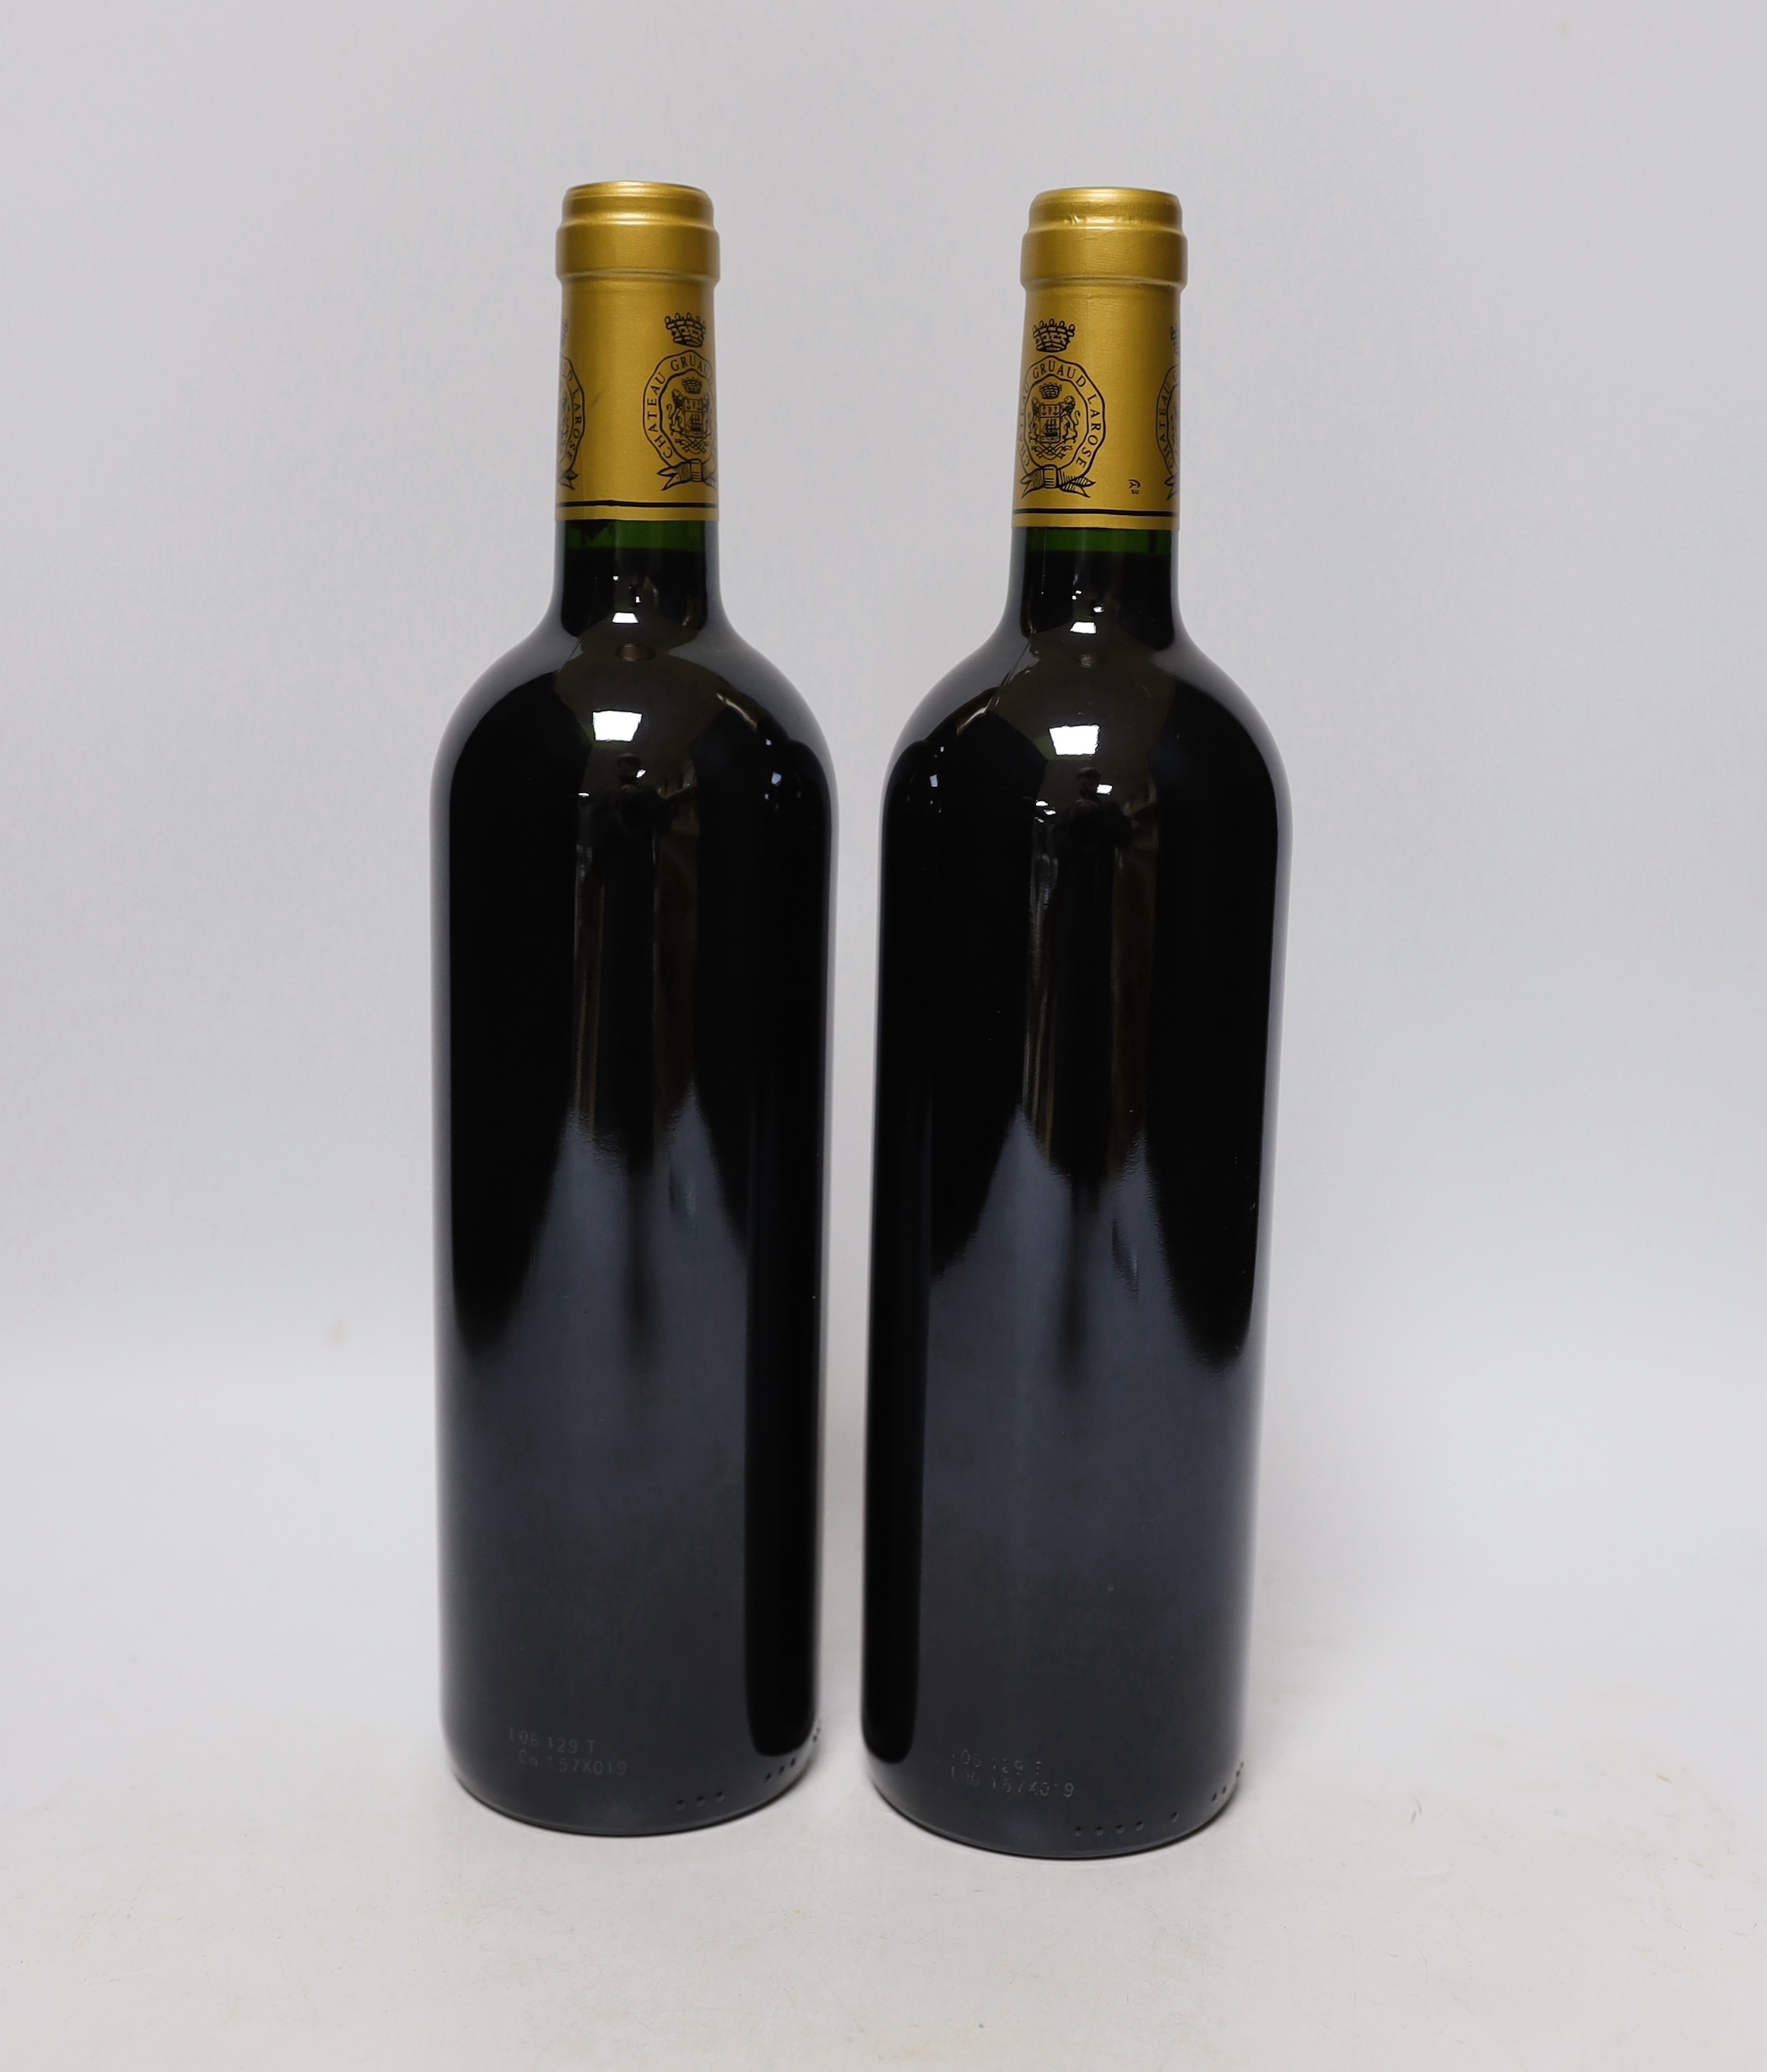 Two bottles of Chauteau Gruaud Larose, Saint Julien, red wine, 2004